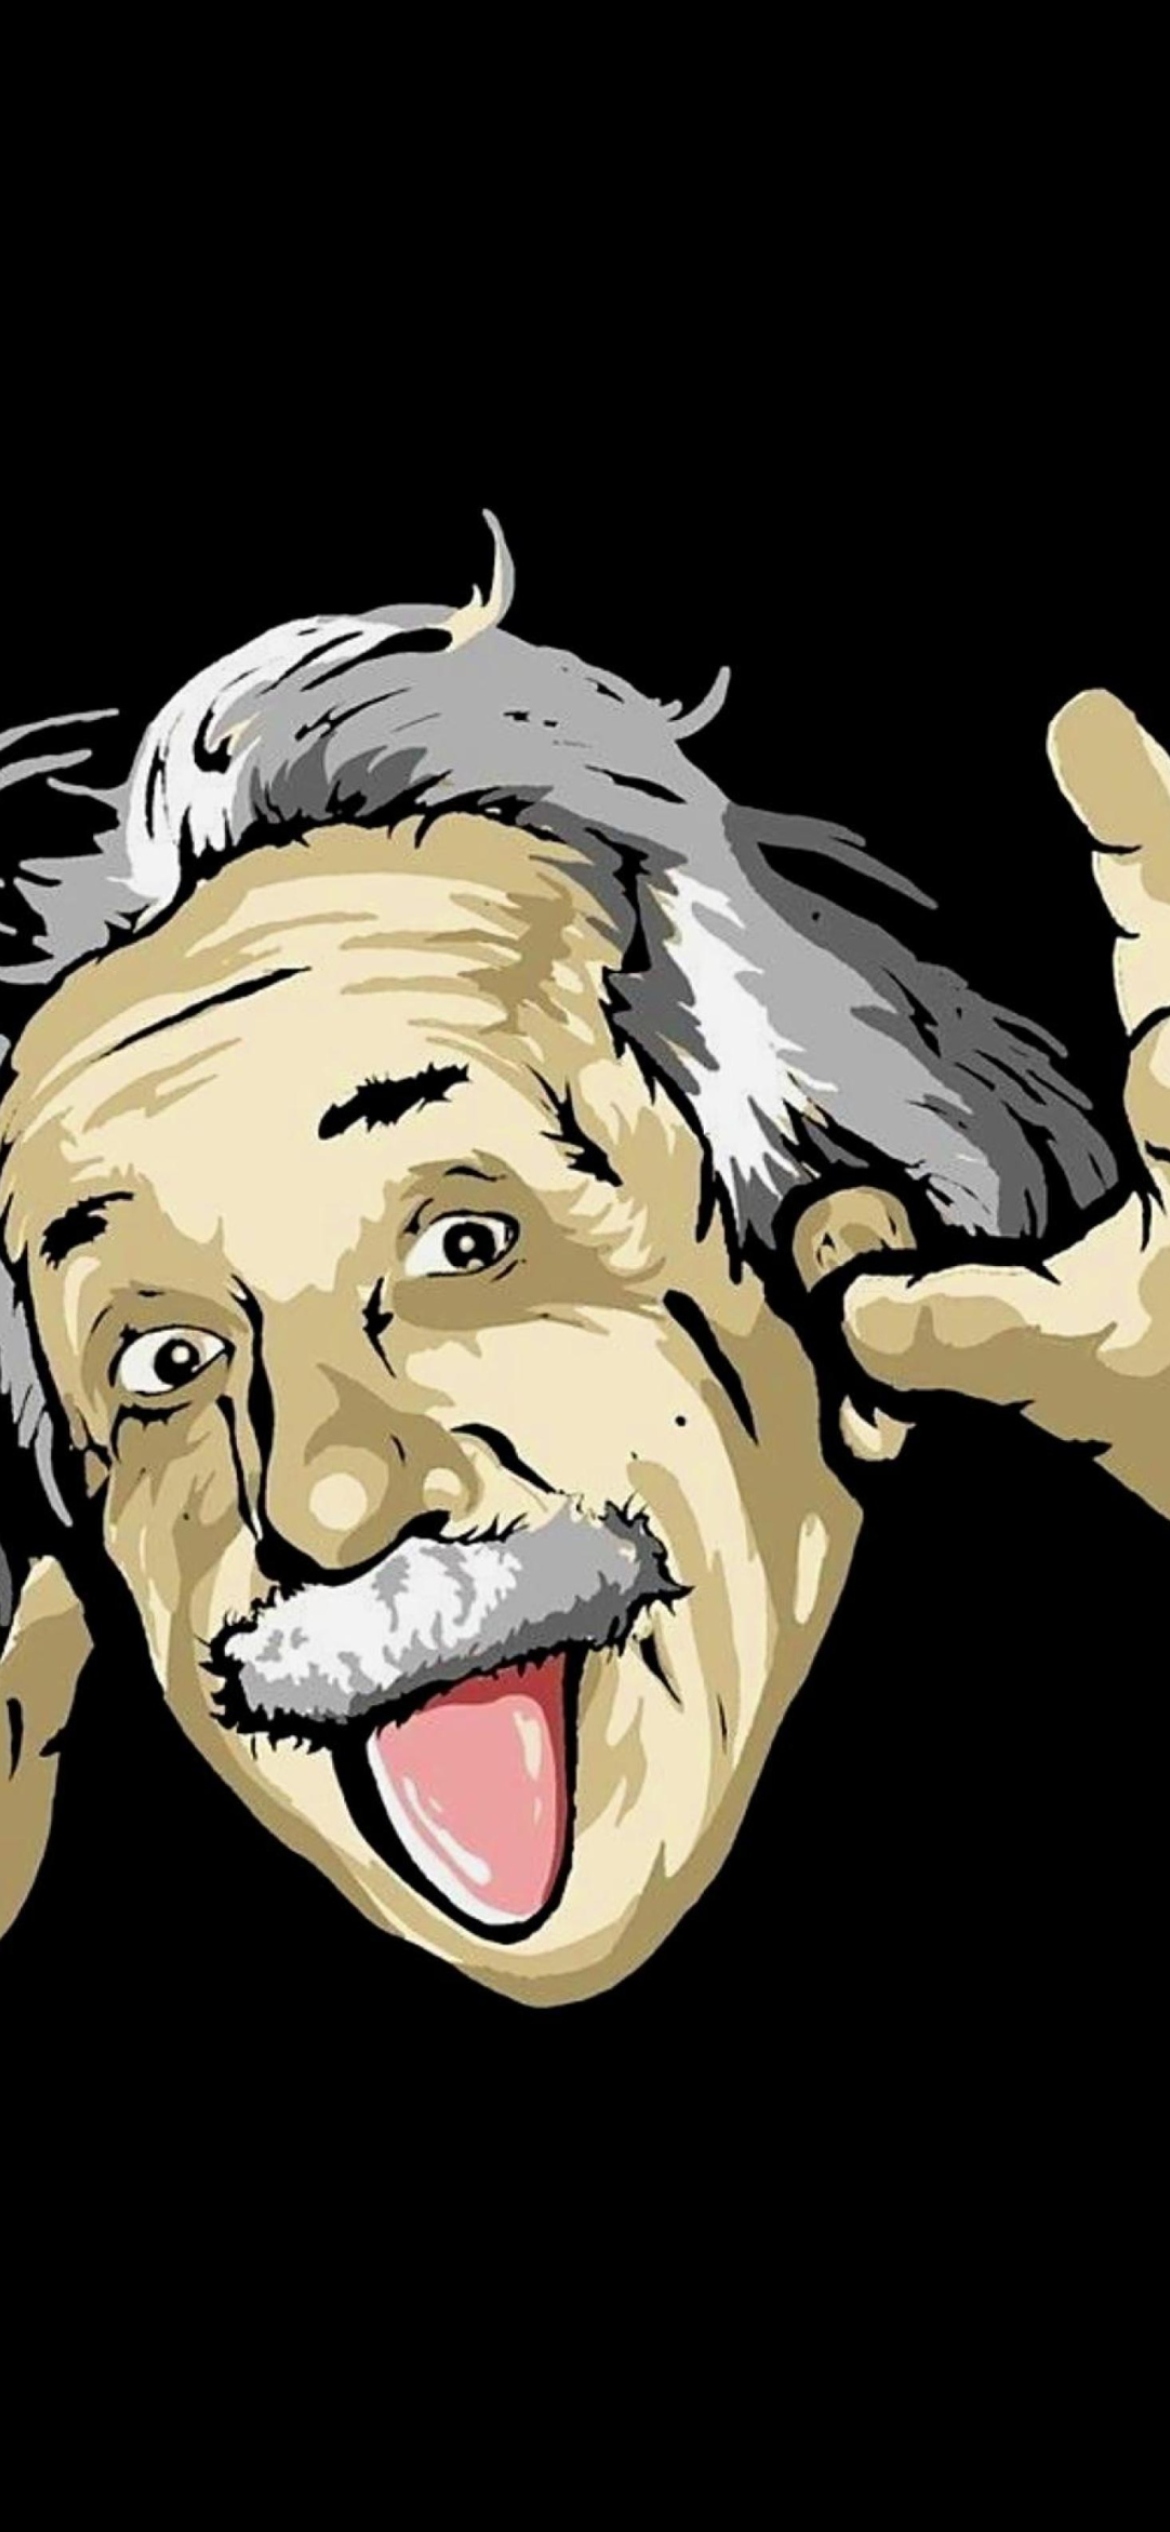 Funny Albert Einstein screenshot #1 1170x2532